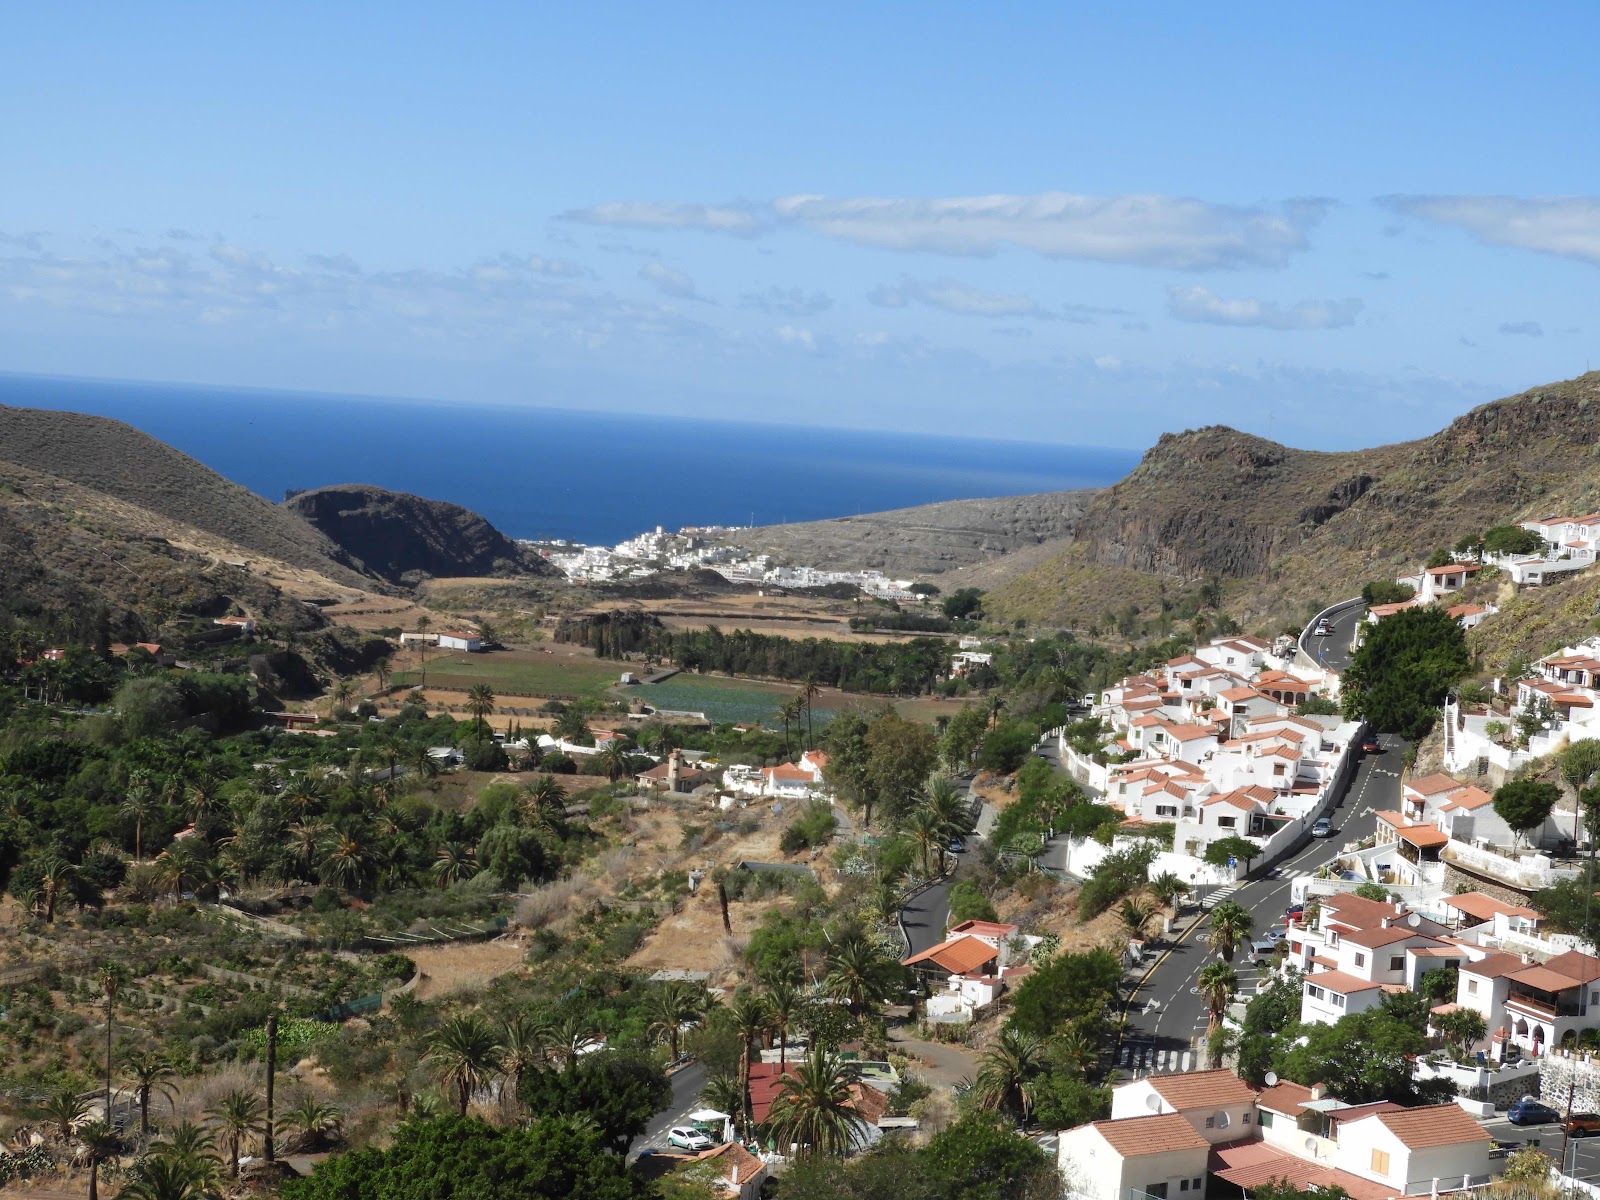 Agaete valley, Gran Canaria